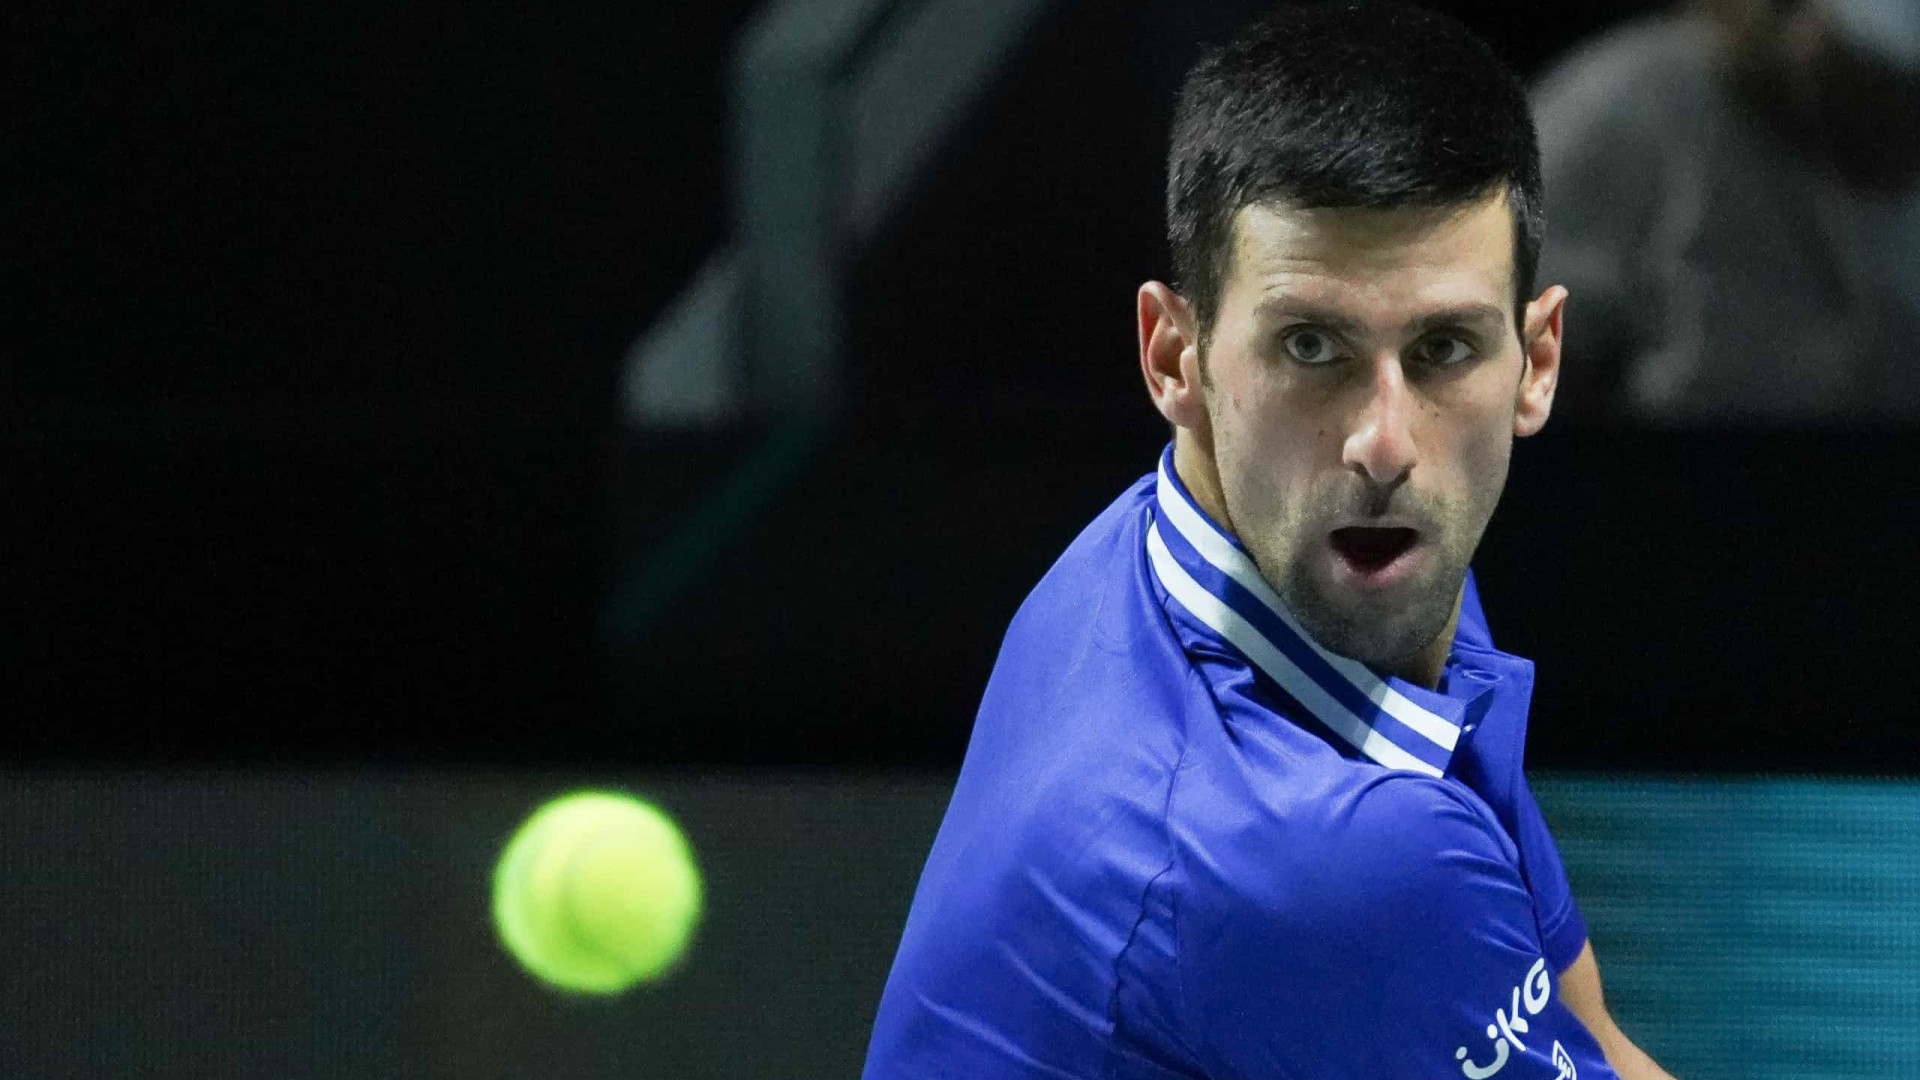 Austrália diz que Djokovic 'não é prisioneiro' e pode ir embora quando quiser